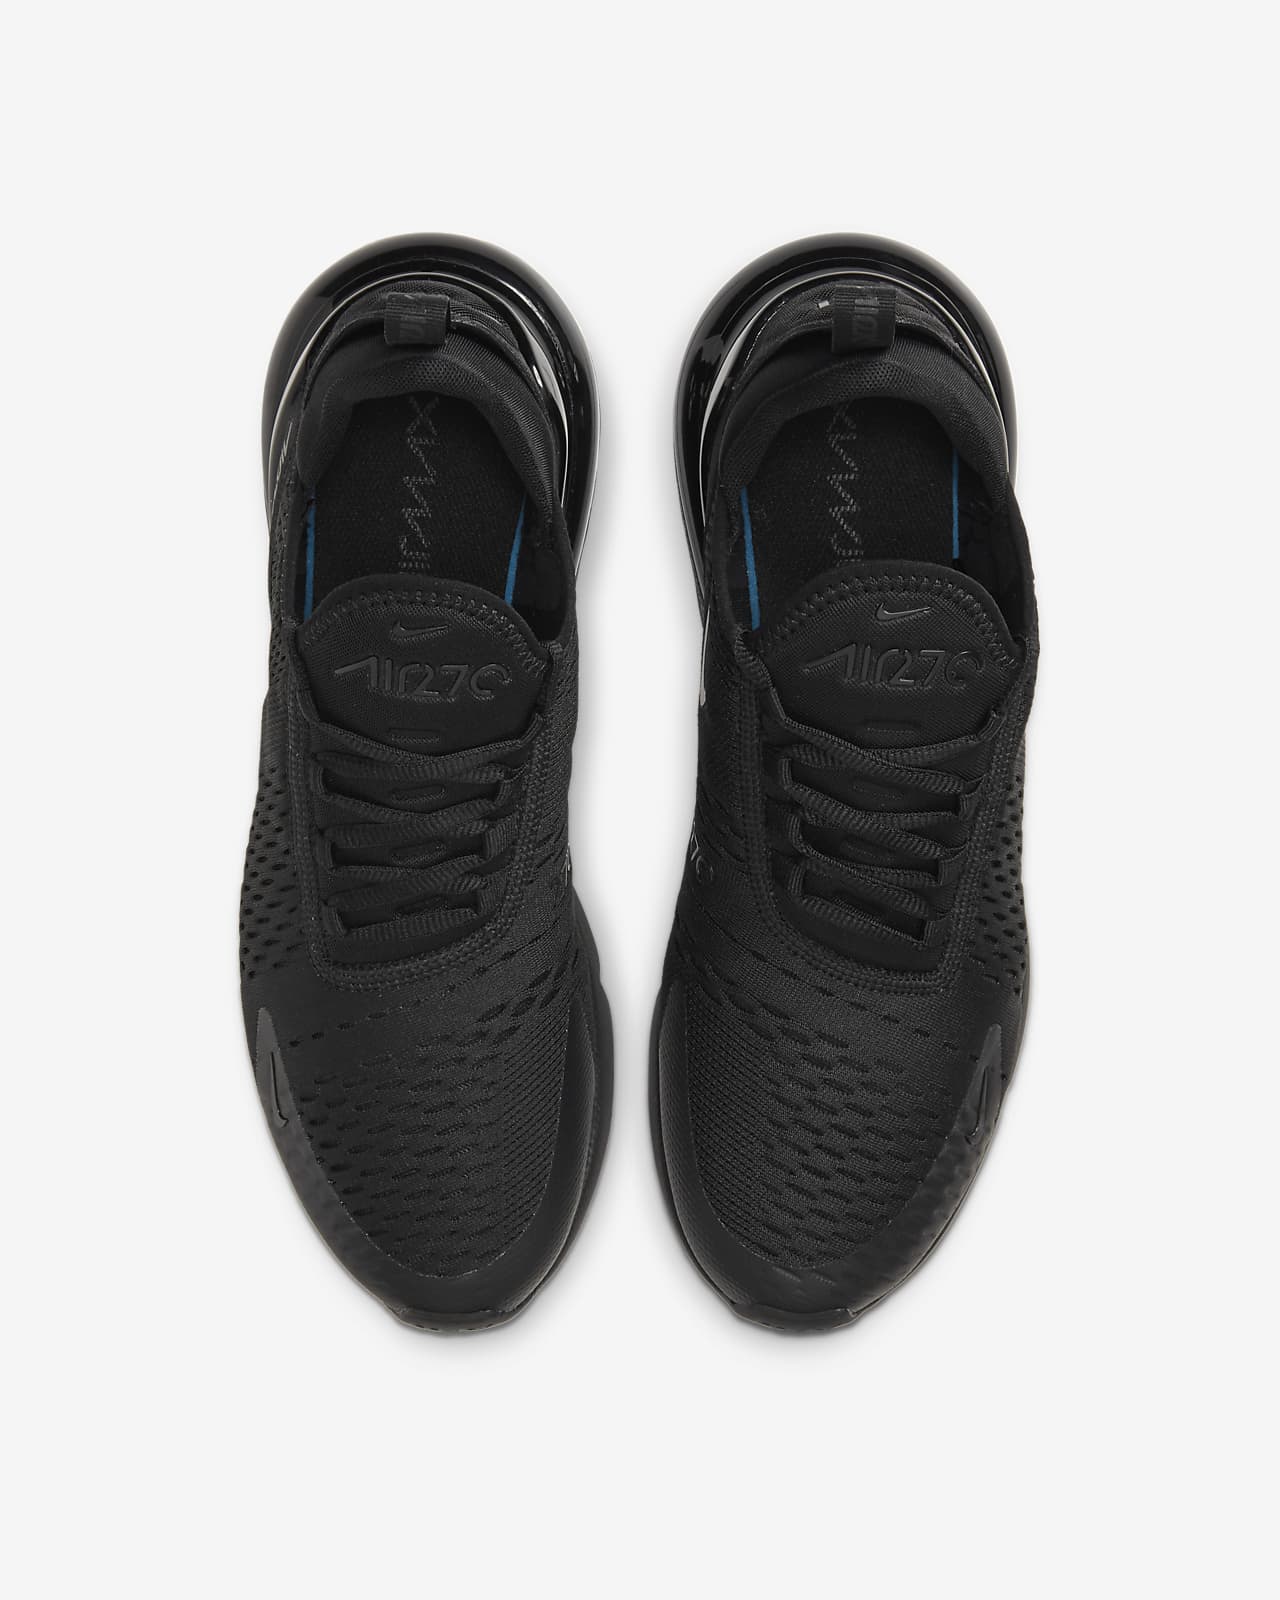 black 270 shoes